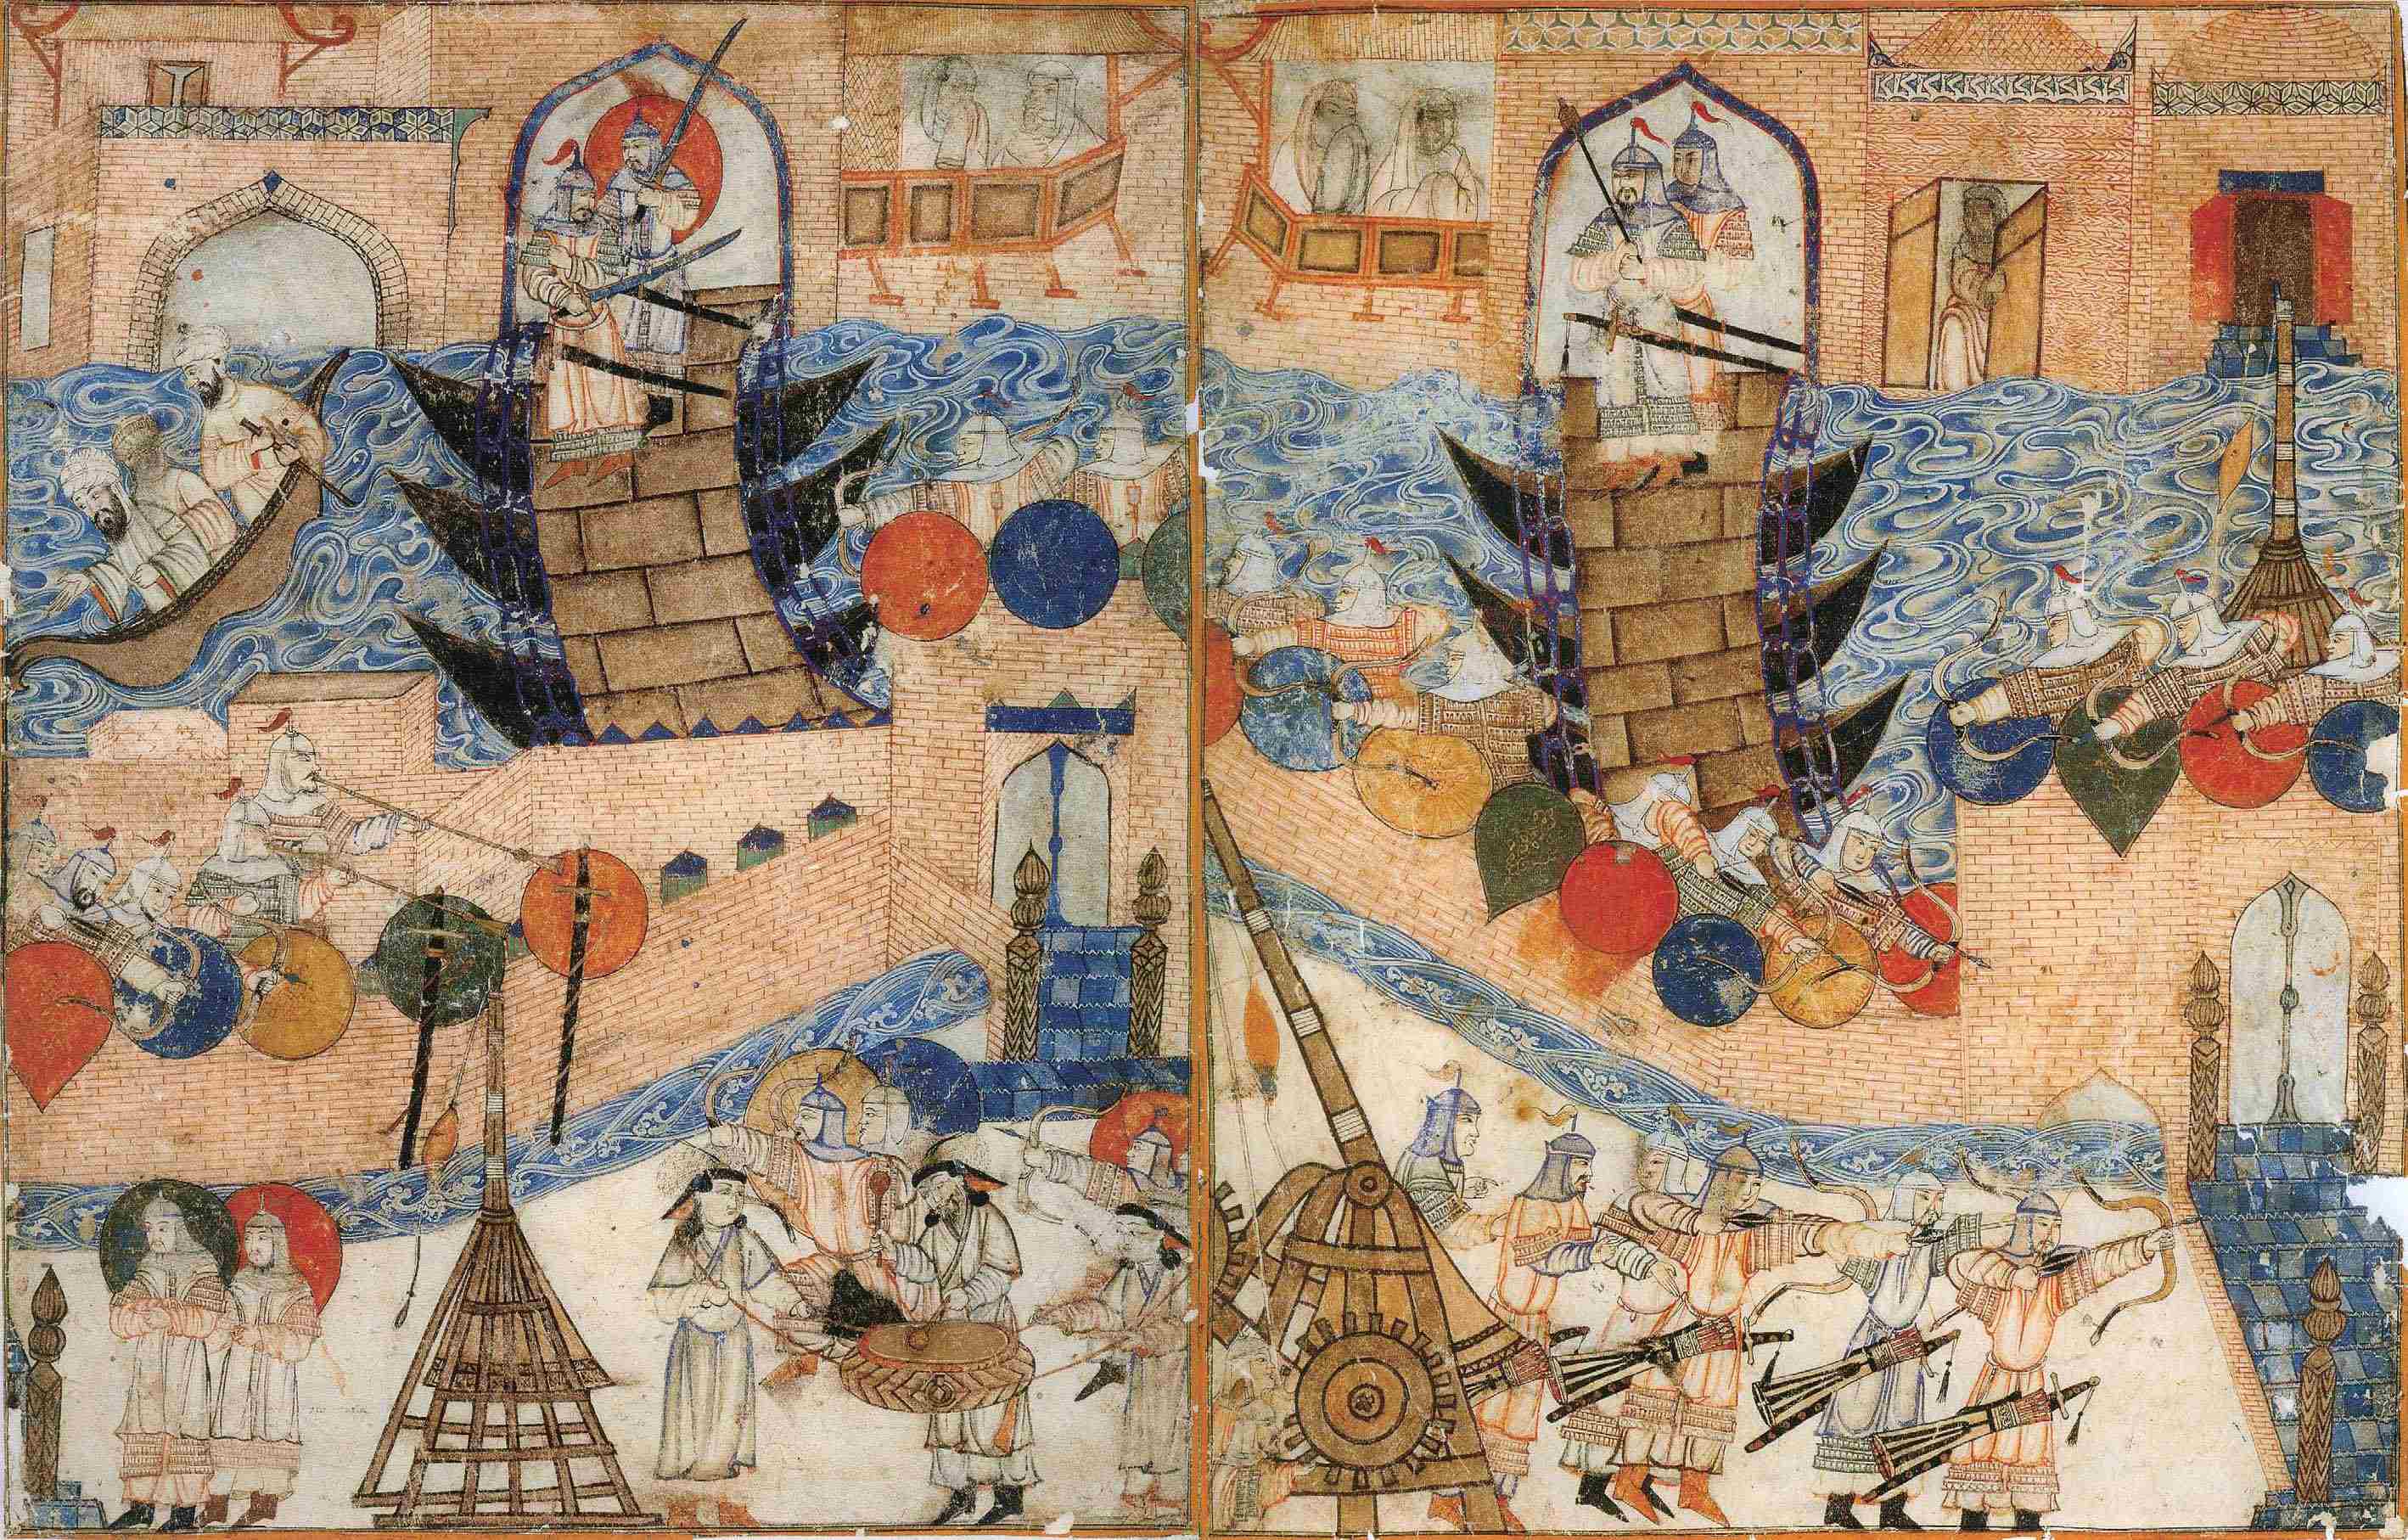 1257年旭烈兀军围攻阿拔斯王朝都城报达(巴格达)